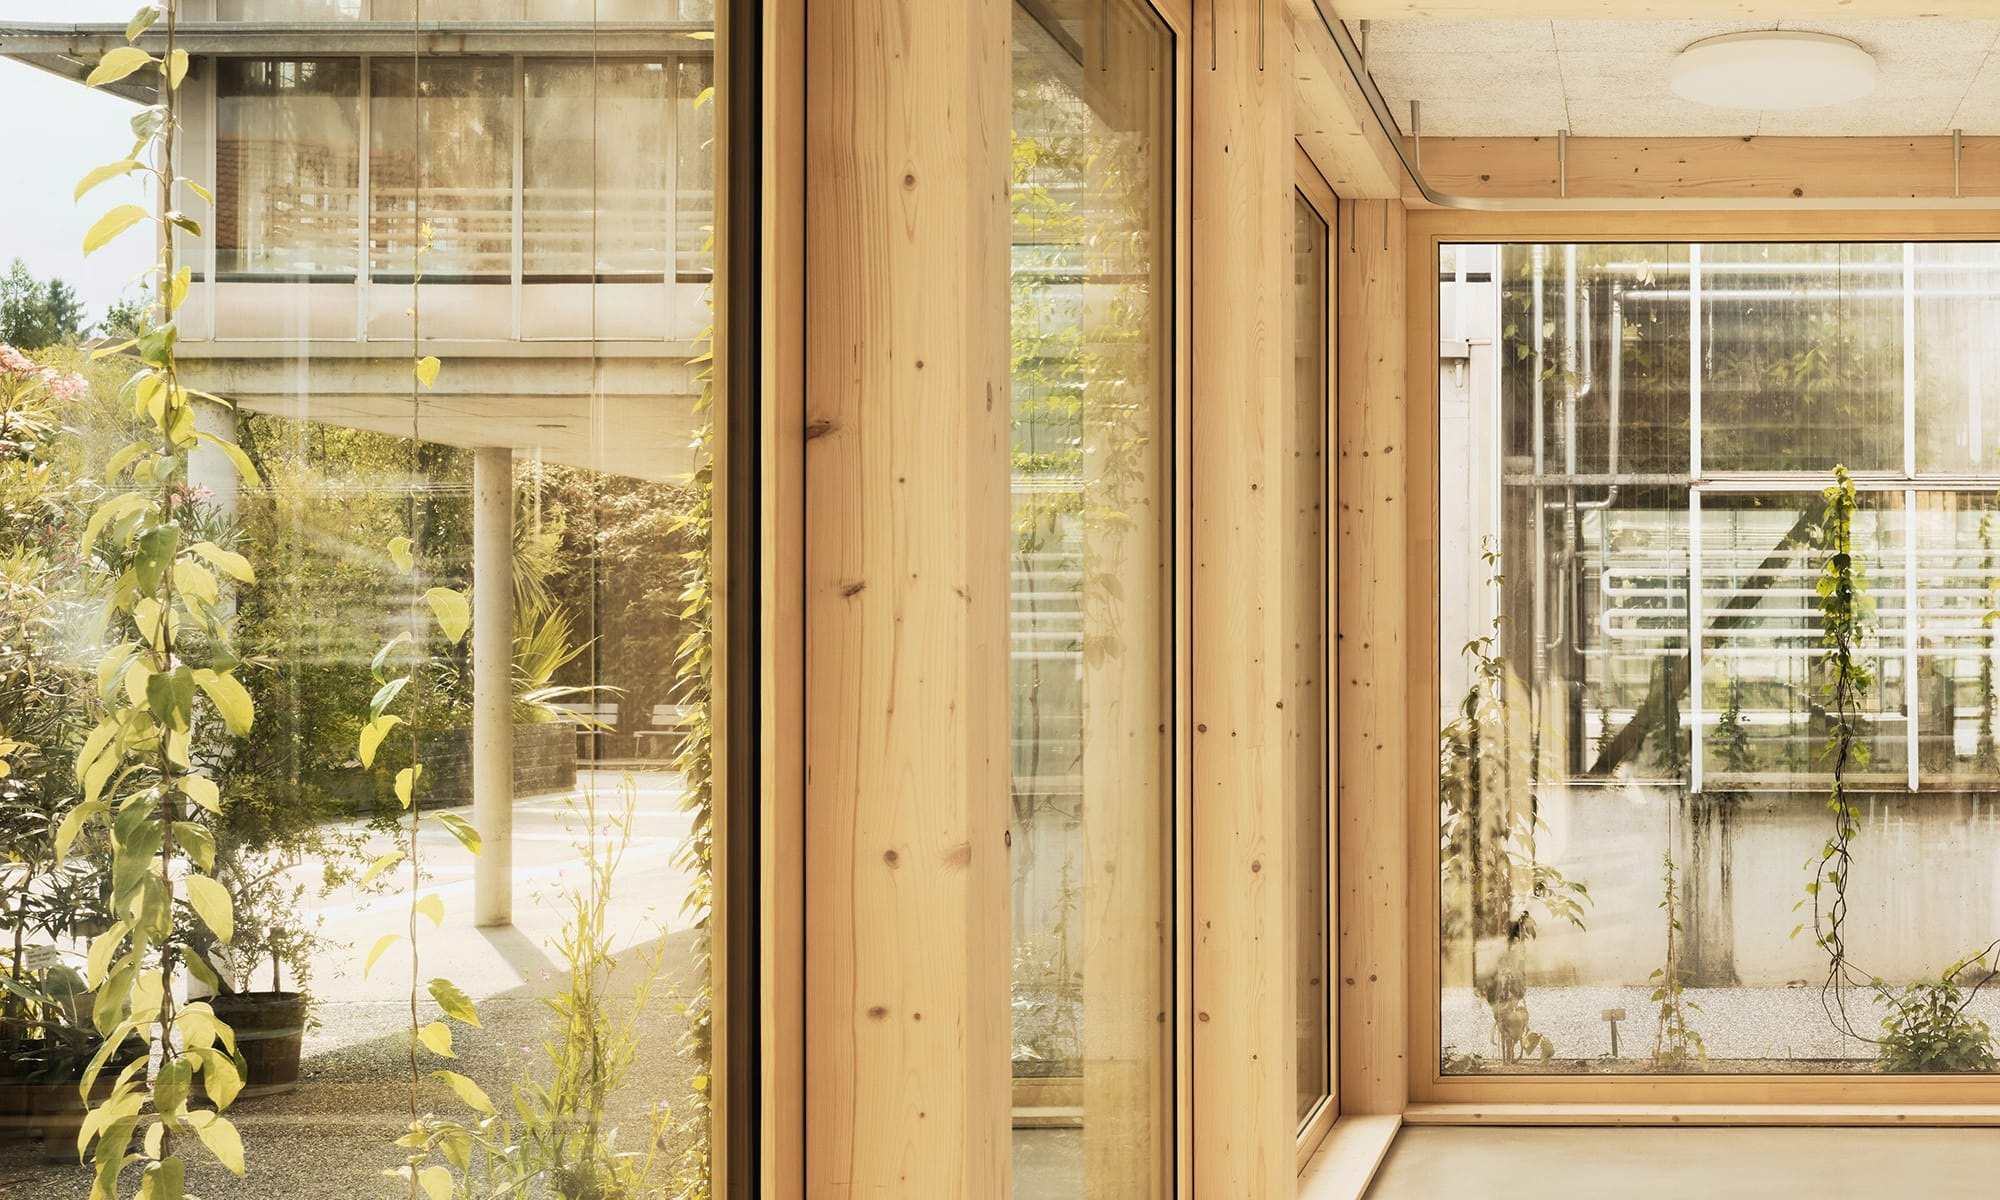 Blick durch die Holz-Glas-Wände aus dem neuerbauten Vortragssaal im botanischen Garten in St. Gallen